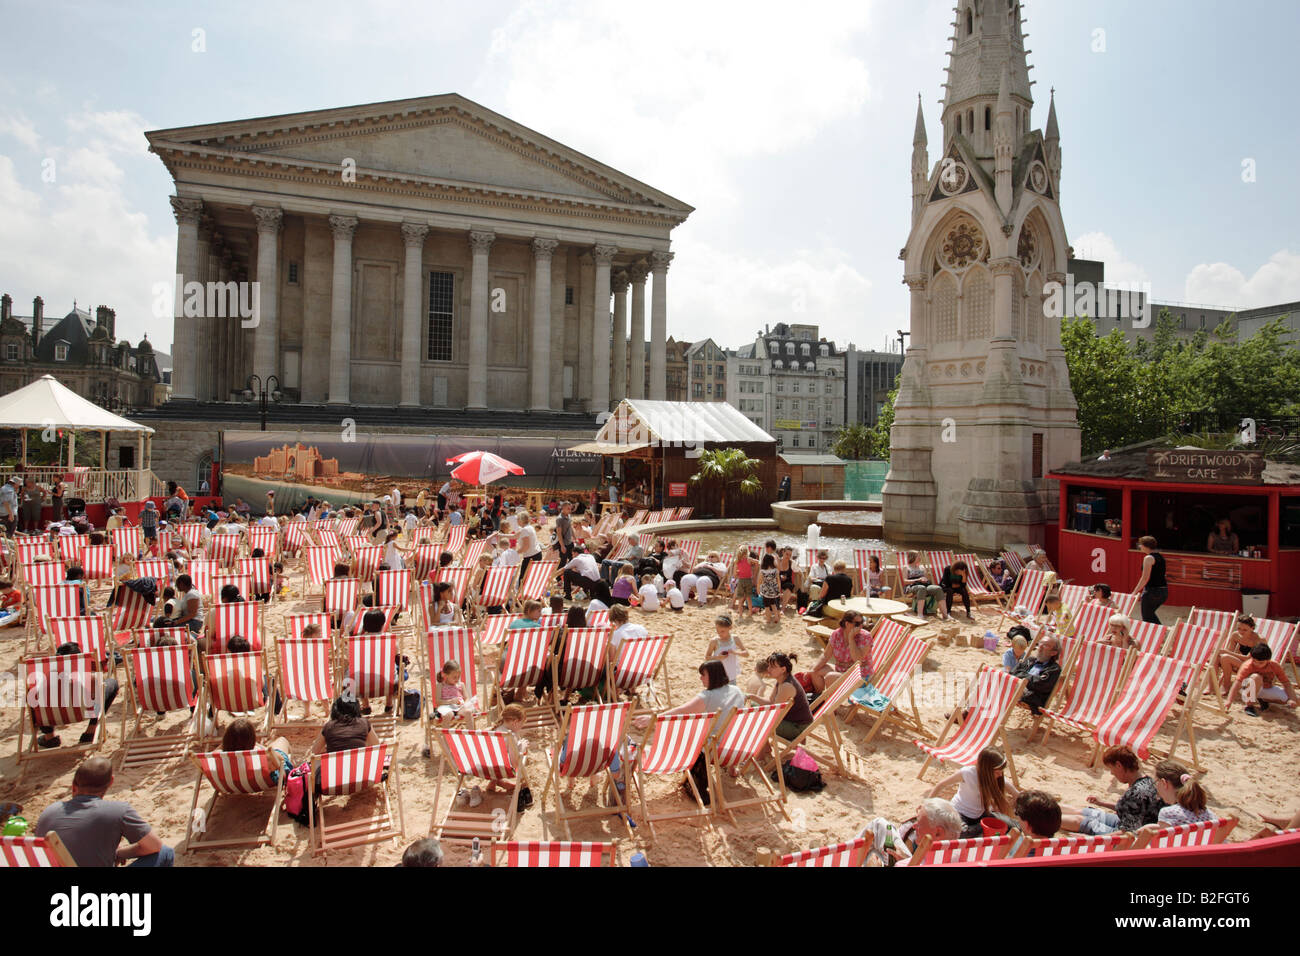 Besucher von Birmingham Chamberlain Quadrat im Vereinigten Königreich sitzen in Liegestühlen auf einen künstlich angelegten Strand. Stockfoto